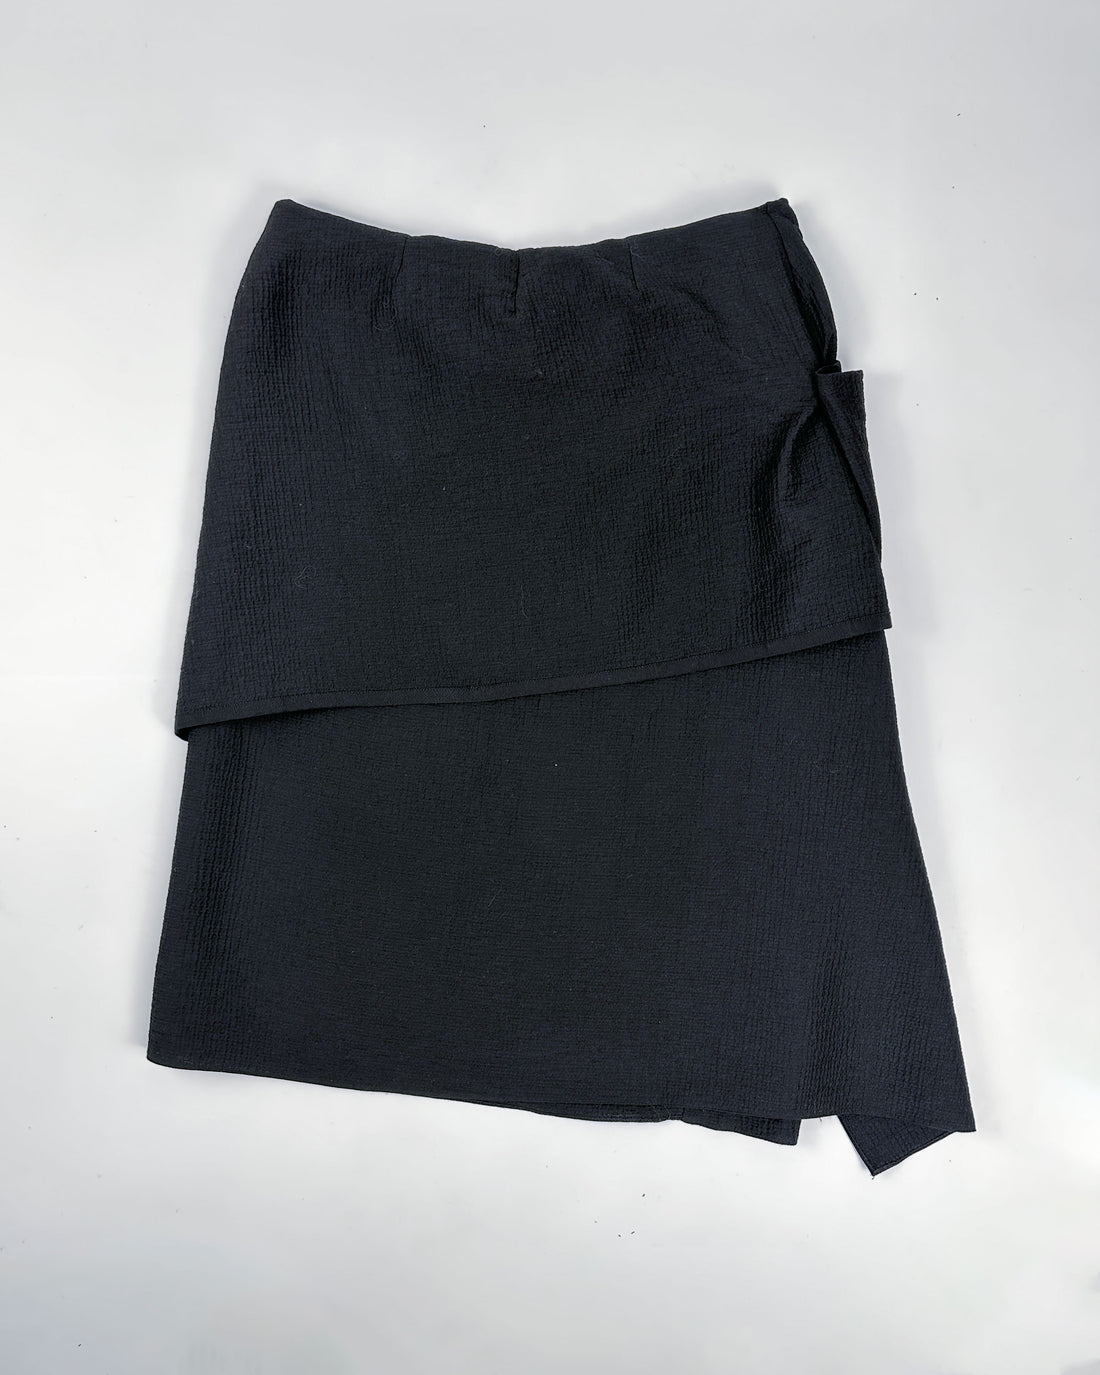 Maison Rabih Kayrouz Black Textured Skirt 2000's